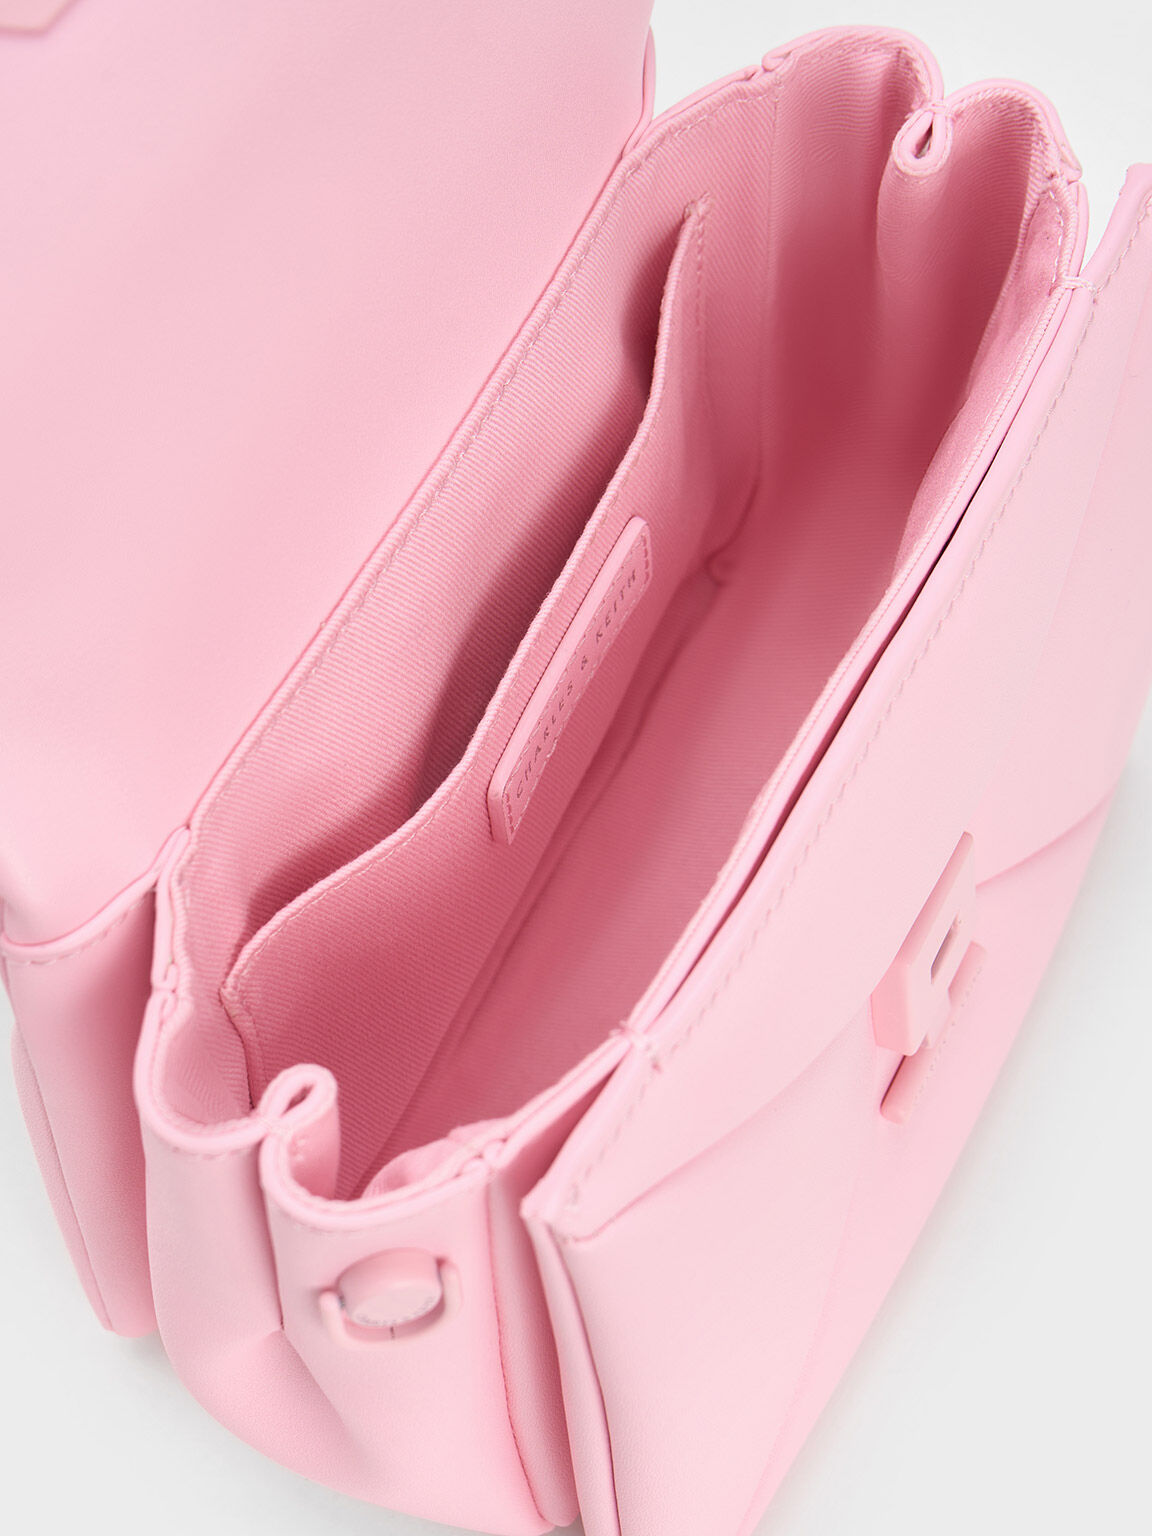 Geometric Push-Lock Top Handle Bag, Light Pink, hi-res